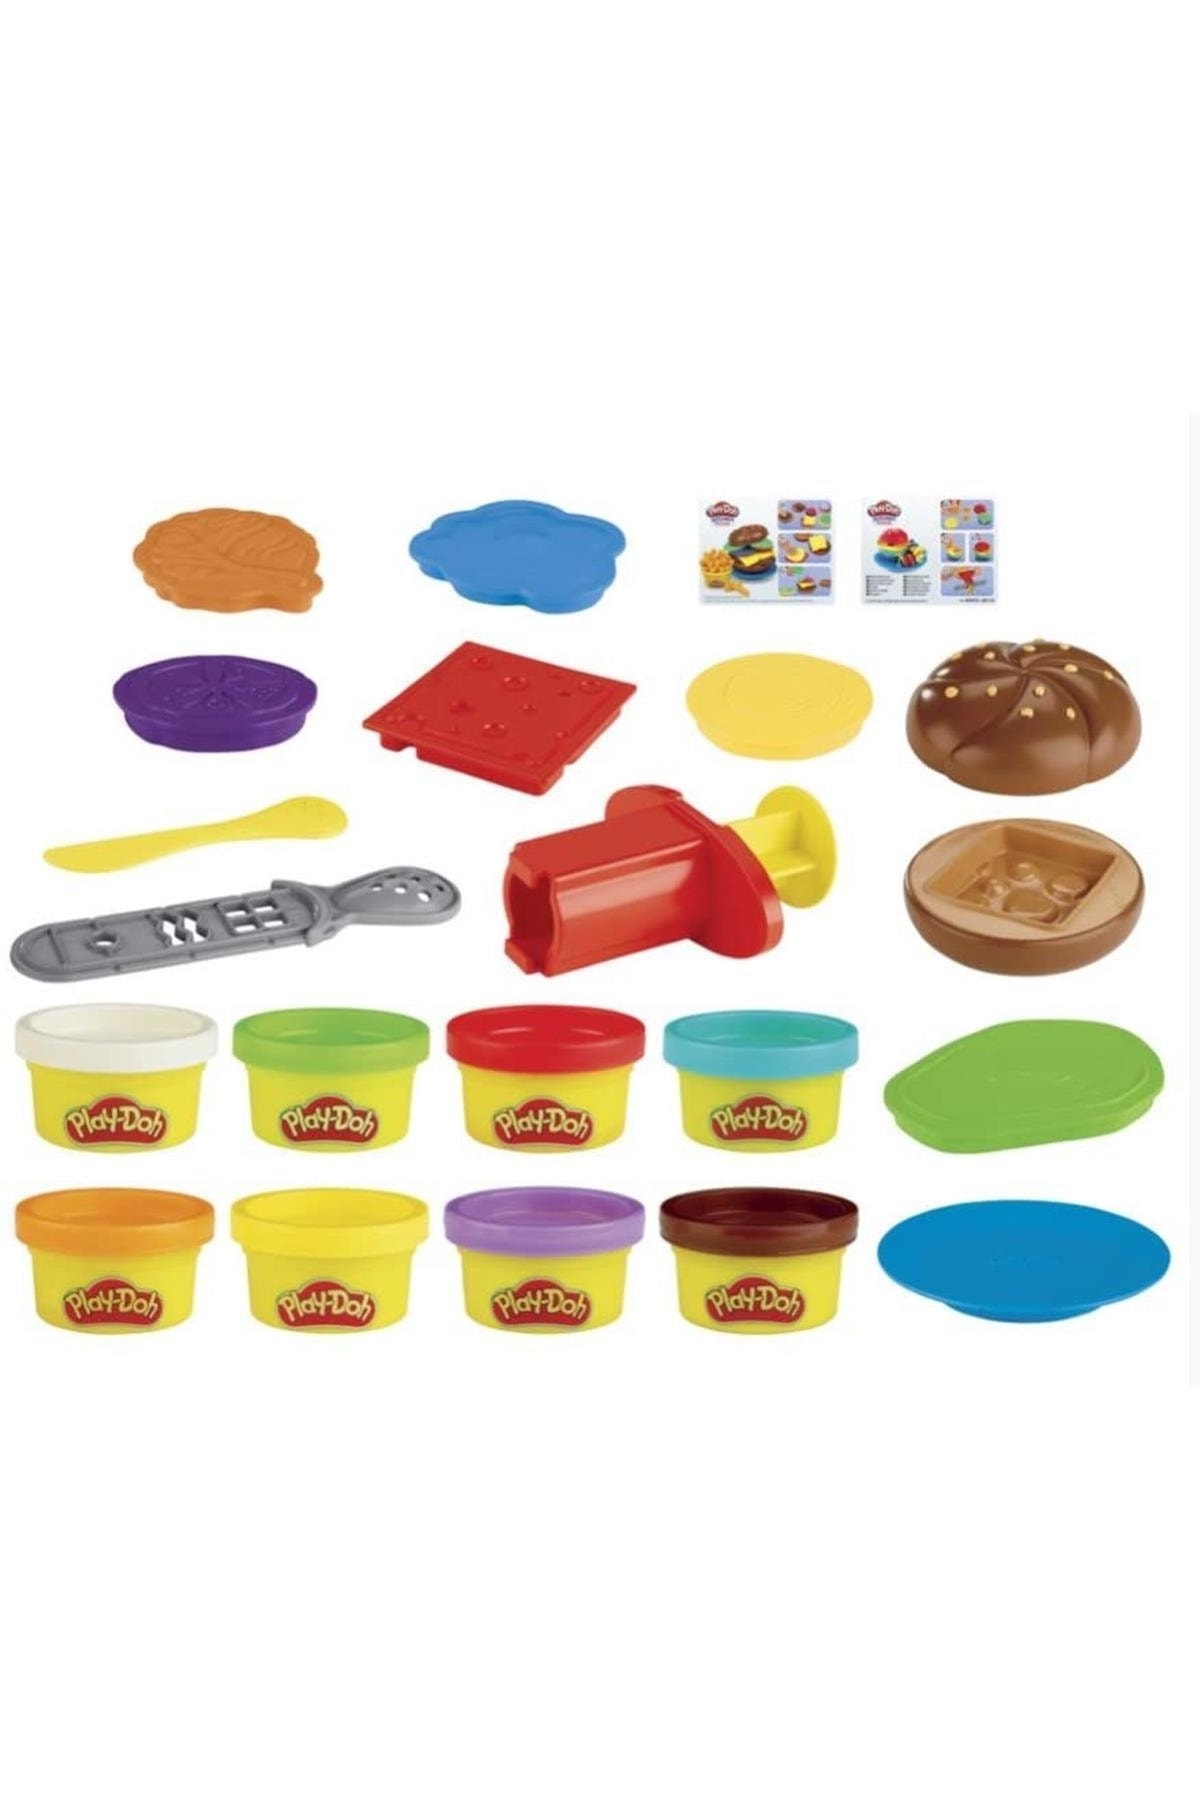 Play Doh Play-doh Mutfak Atölyesi Hamburger Ve Patates Kızartması Oyun Hamuru Seti